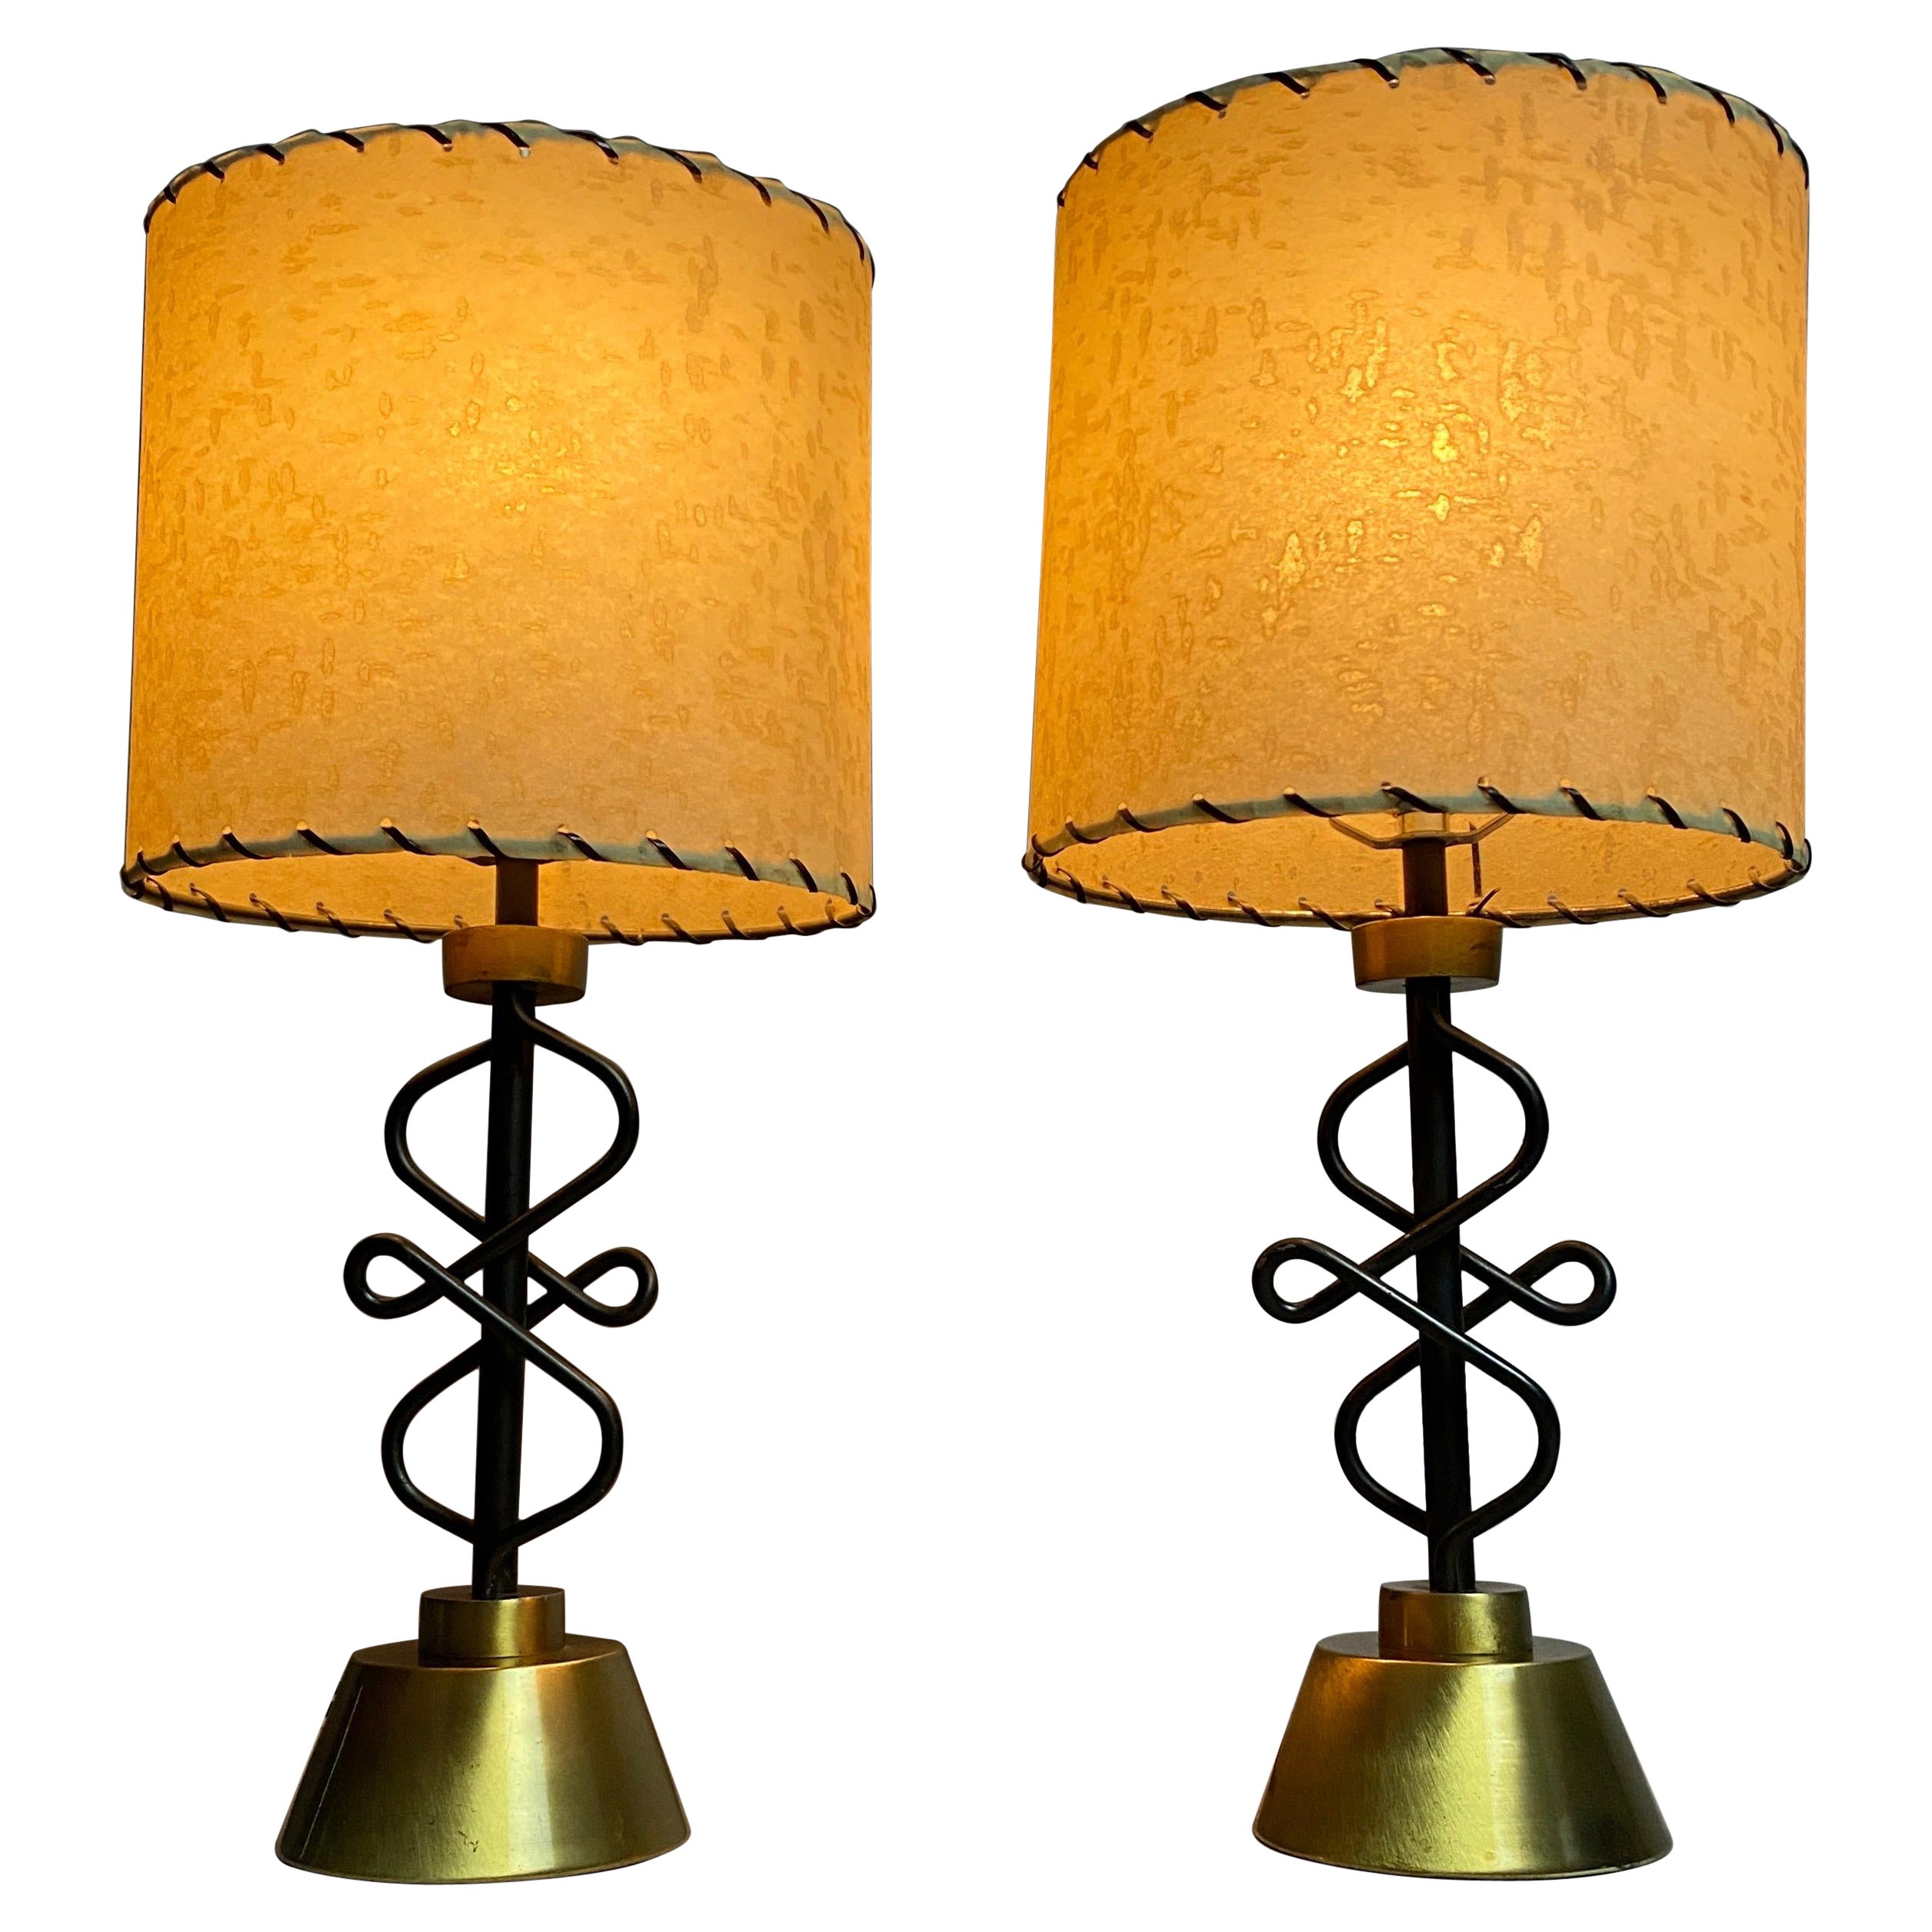 Tischlampen von The Majestic Lamp Co.